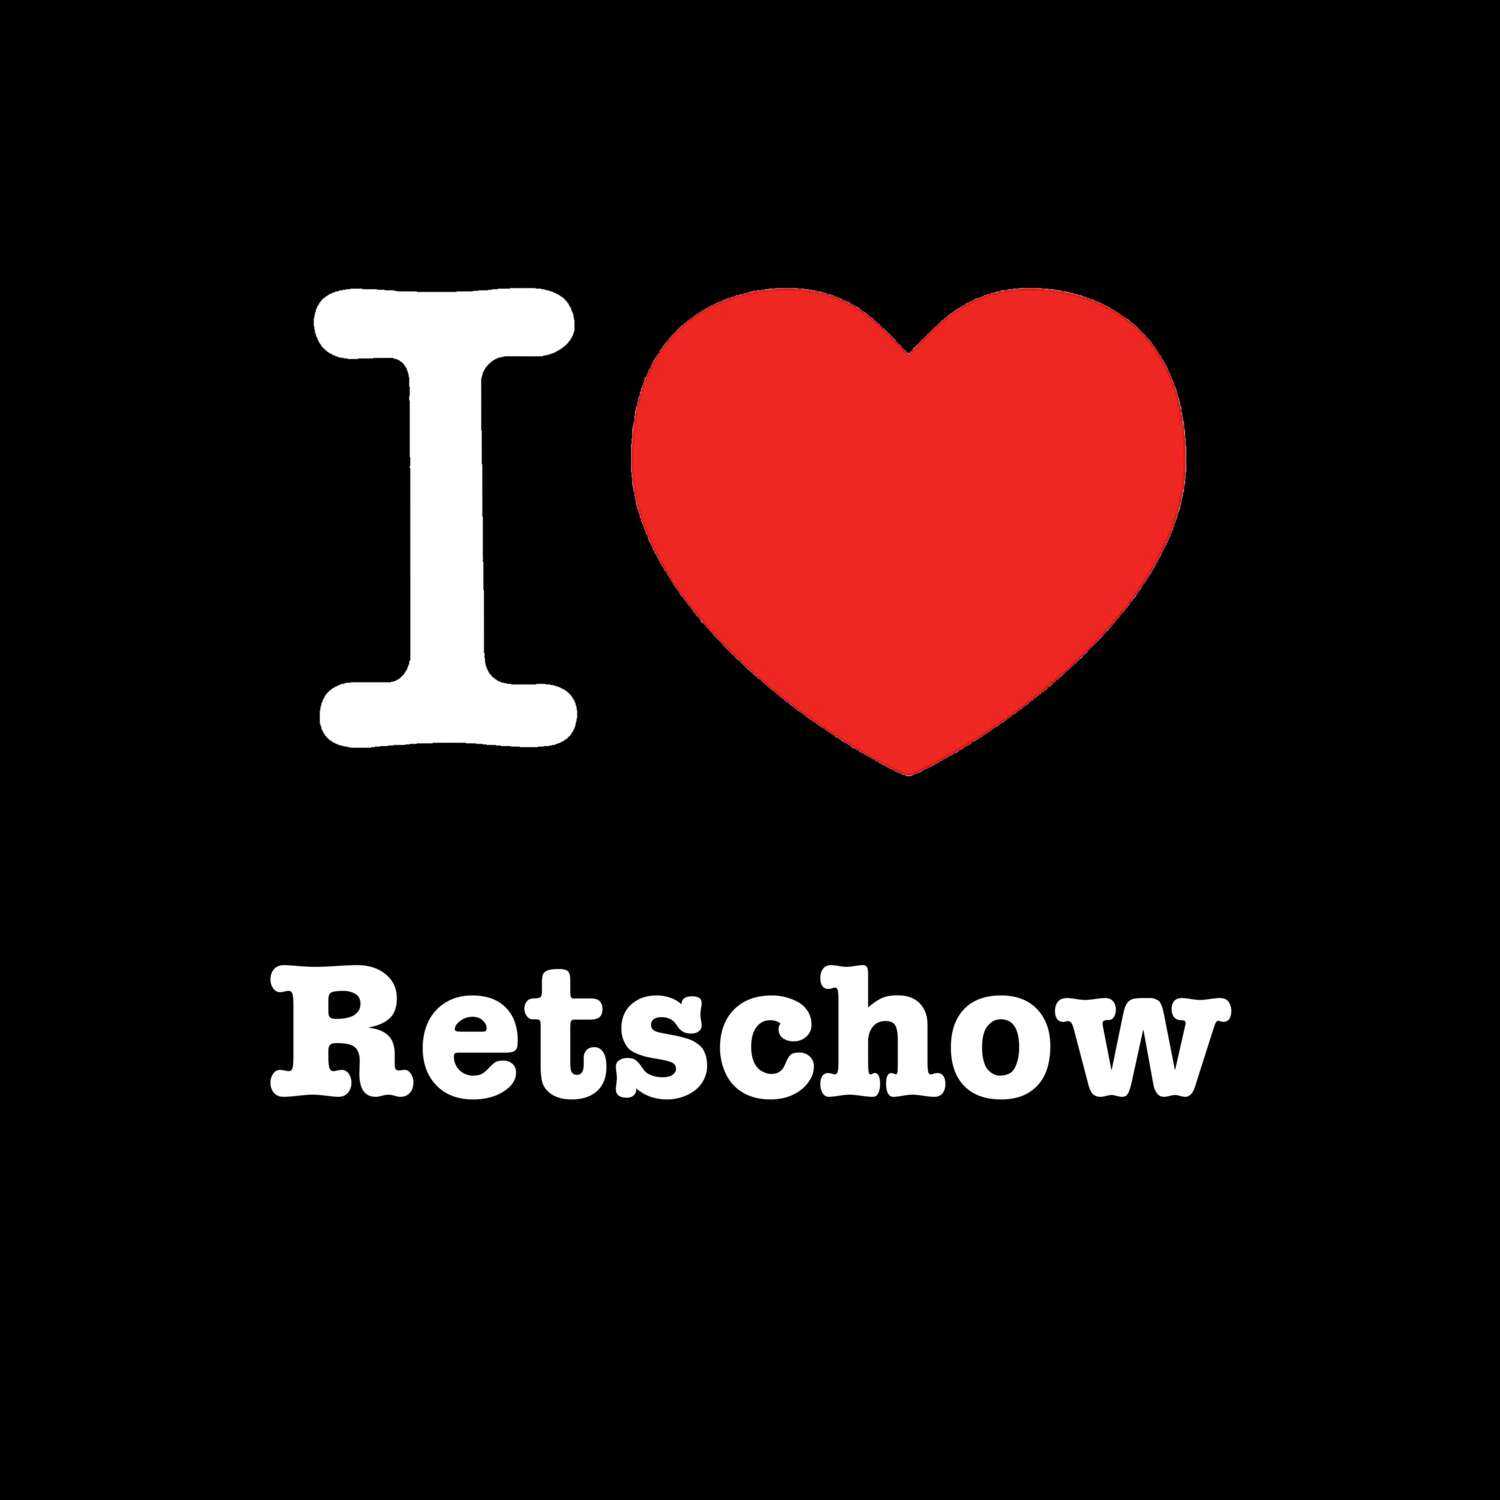 Retschow T-Shirt »I love«